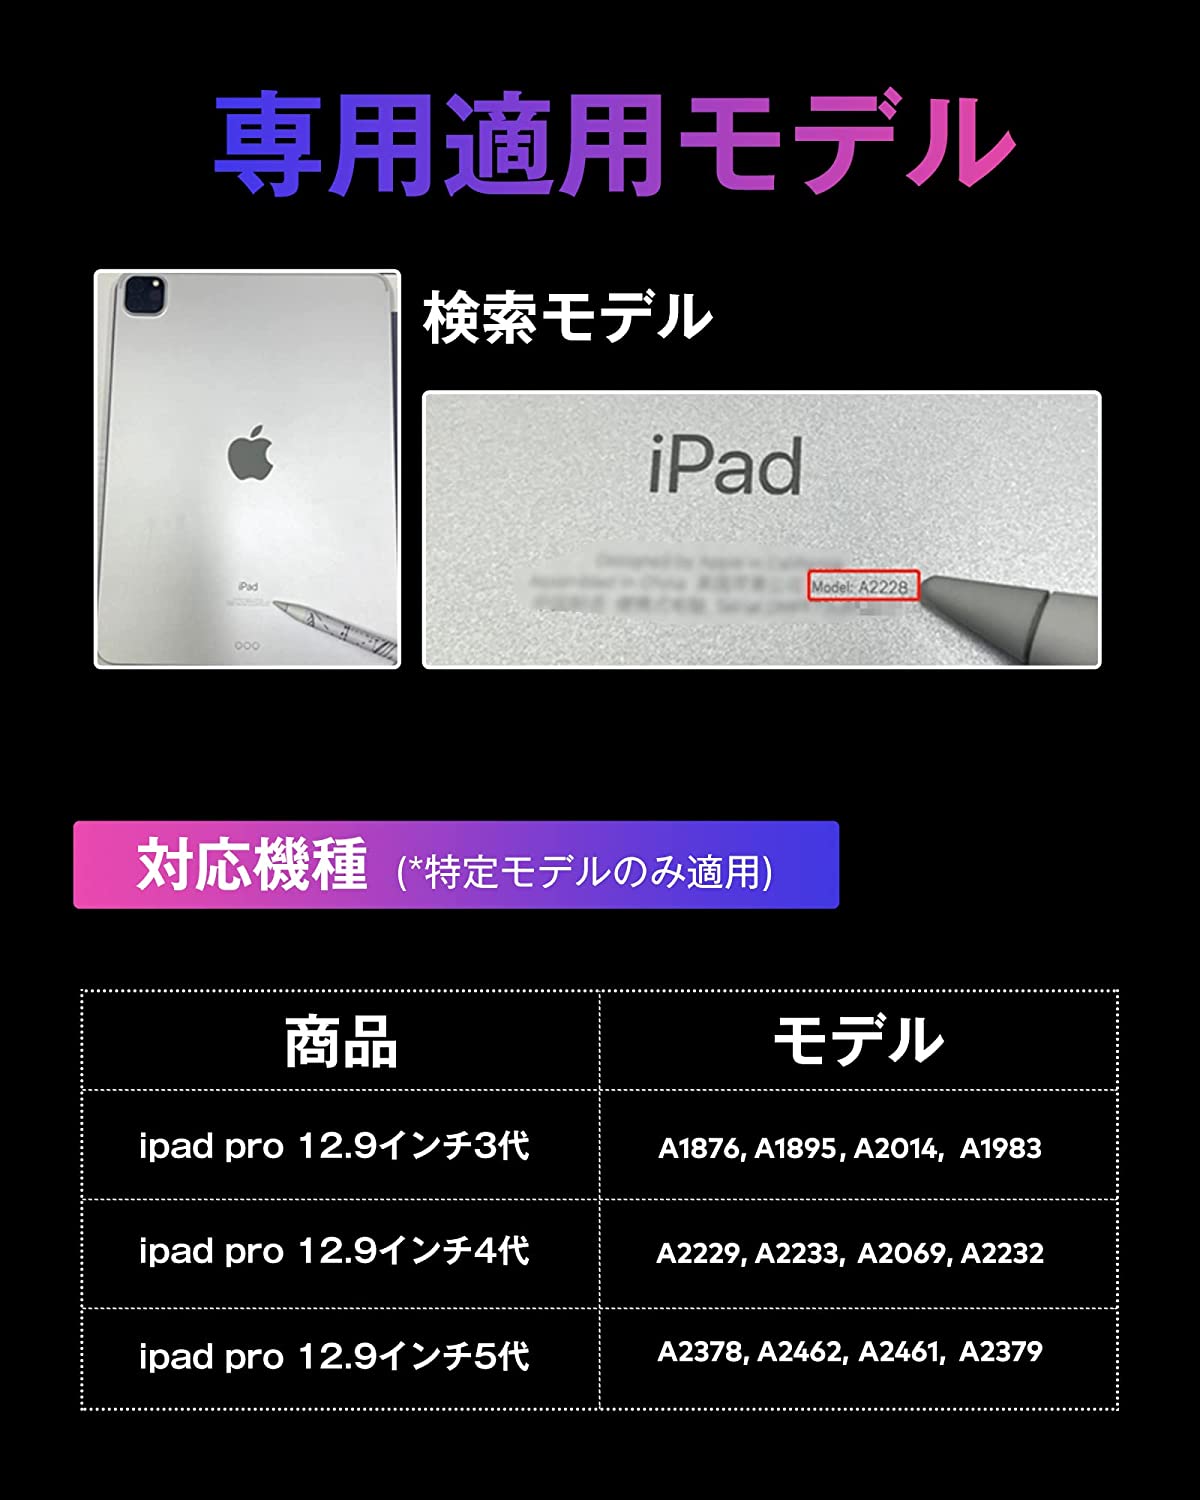 iPad専用マグネット式スタンド TMS-002